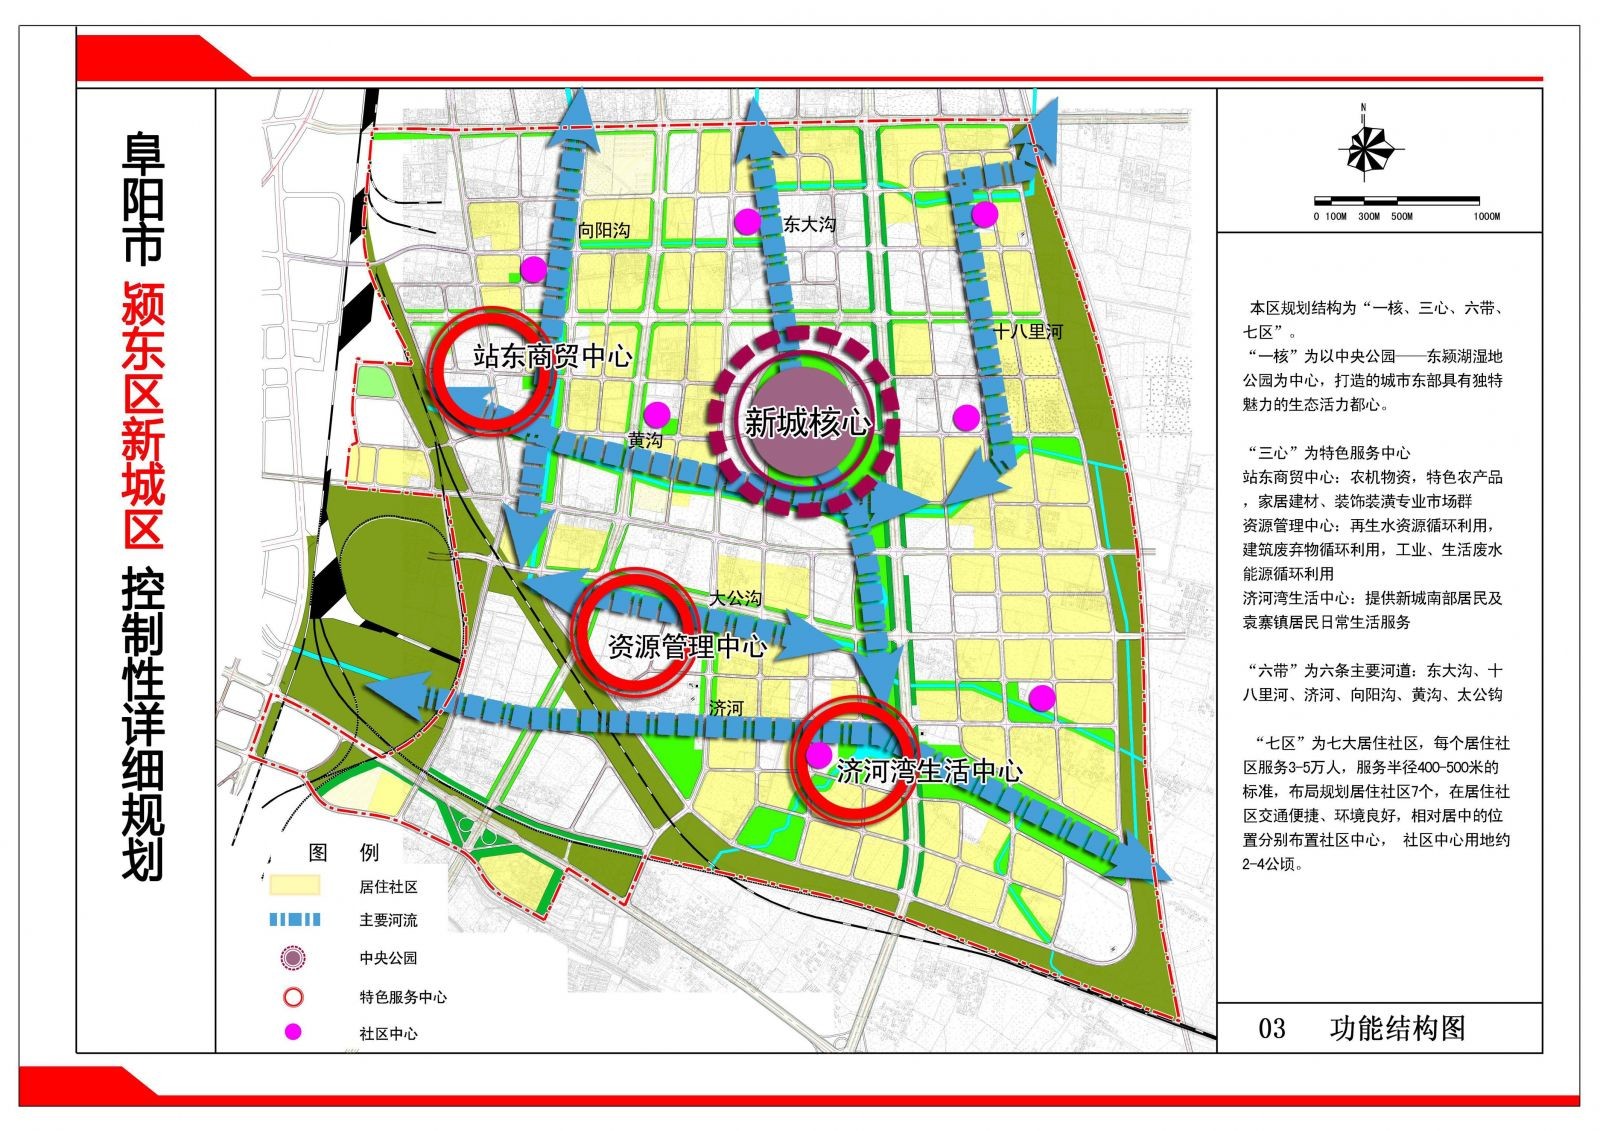 颍东新城规划是阜城重要规划之一,新城范围包括阜阳市中心城区东部